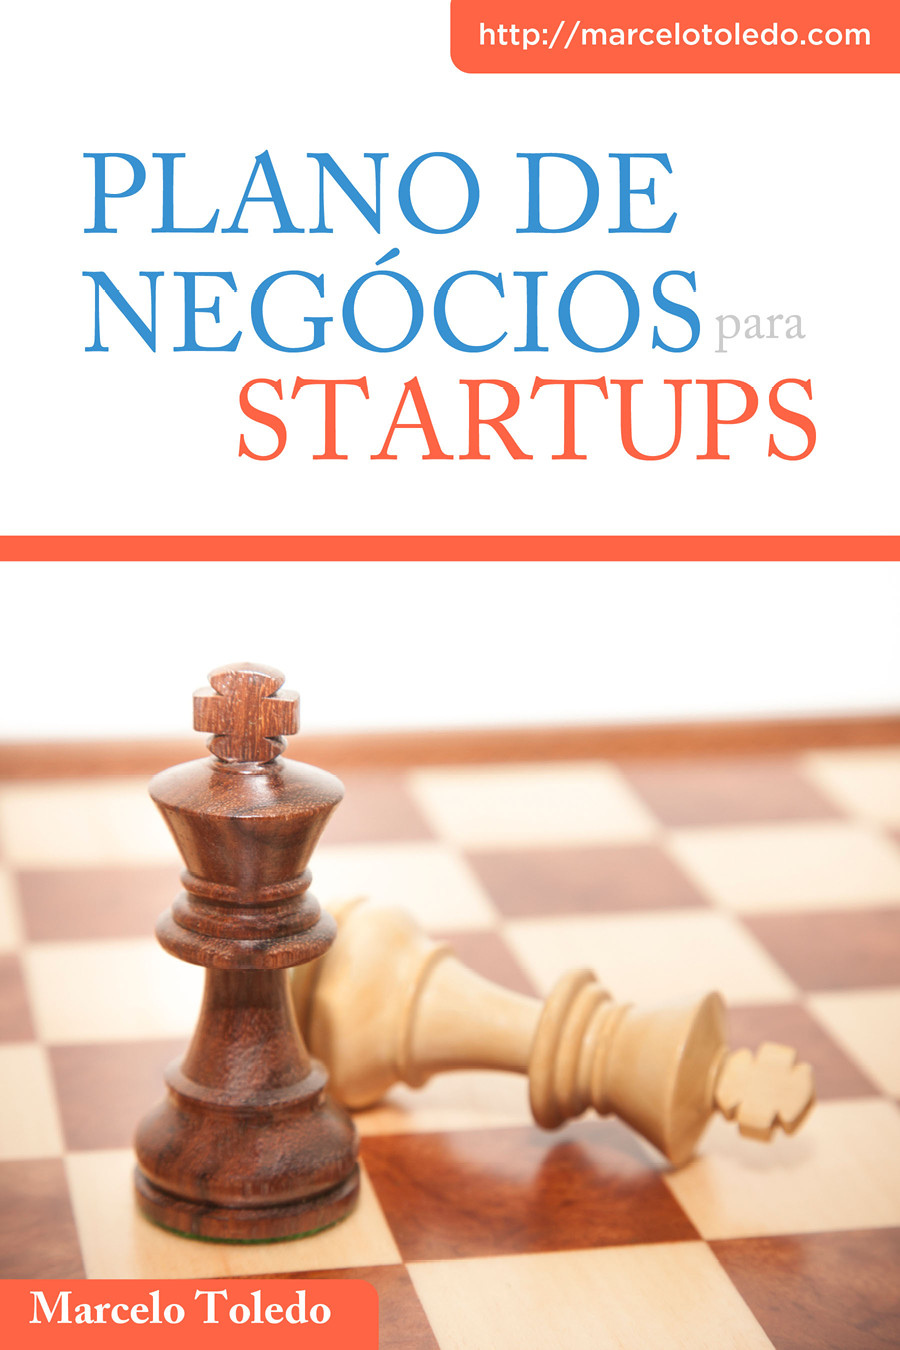 Download Plano de Negocios para Startups Marcelo Toledo em epub mobi pdf